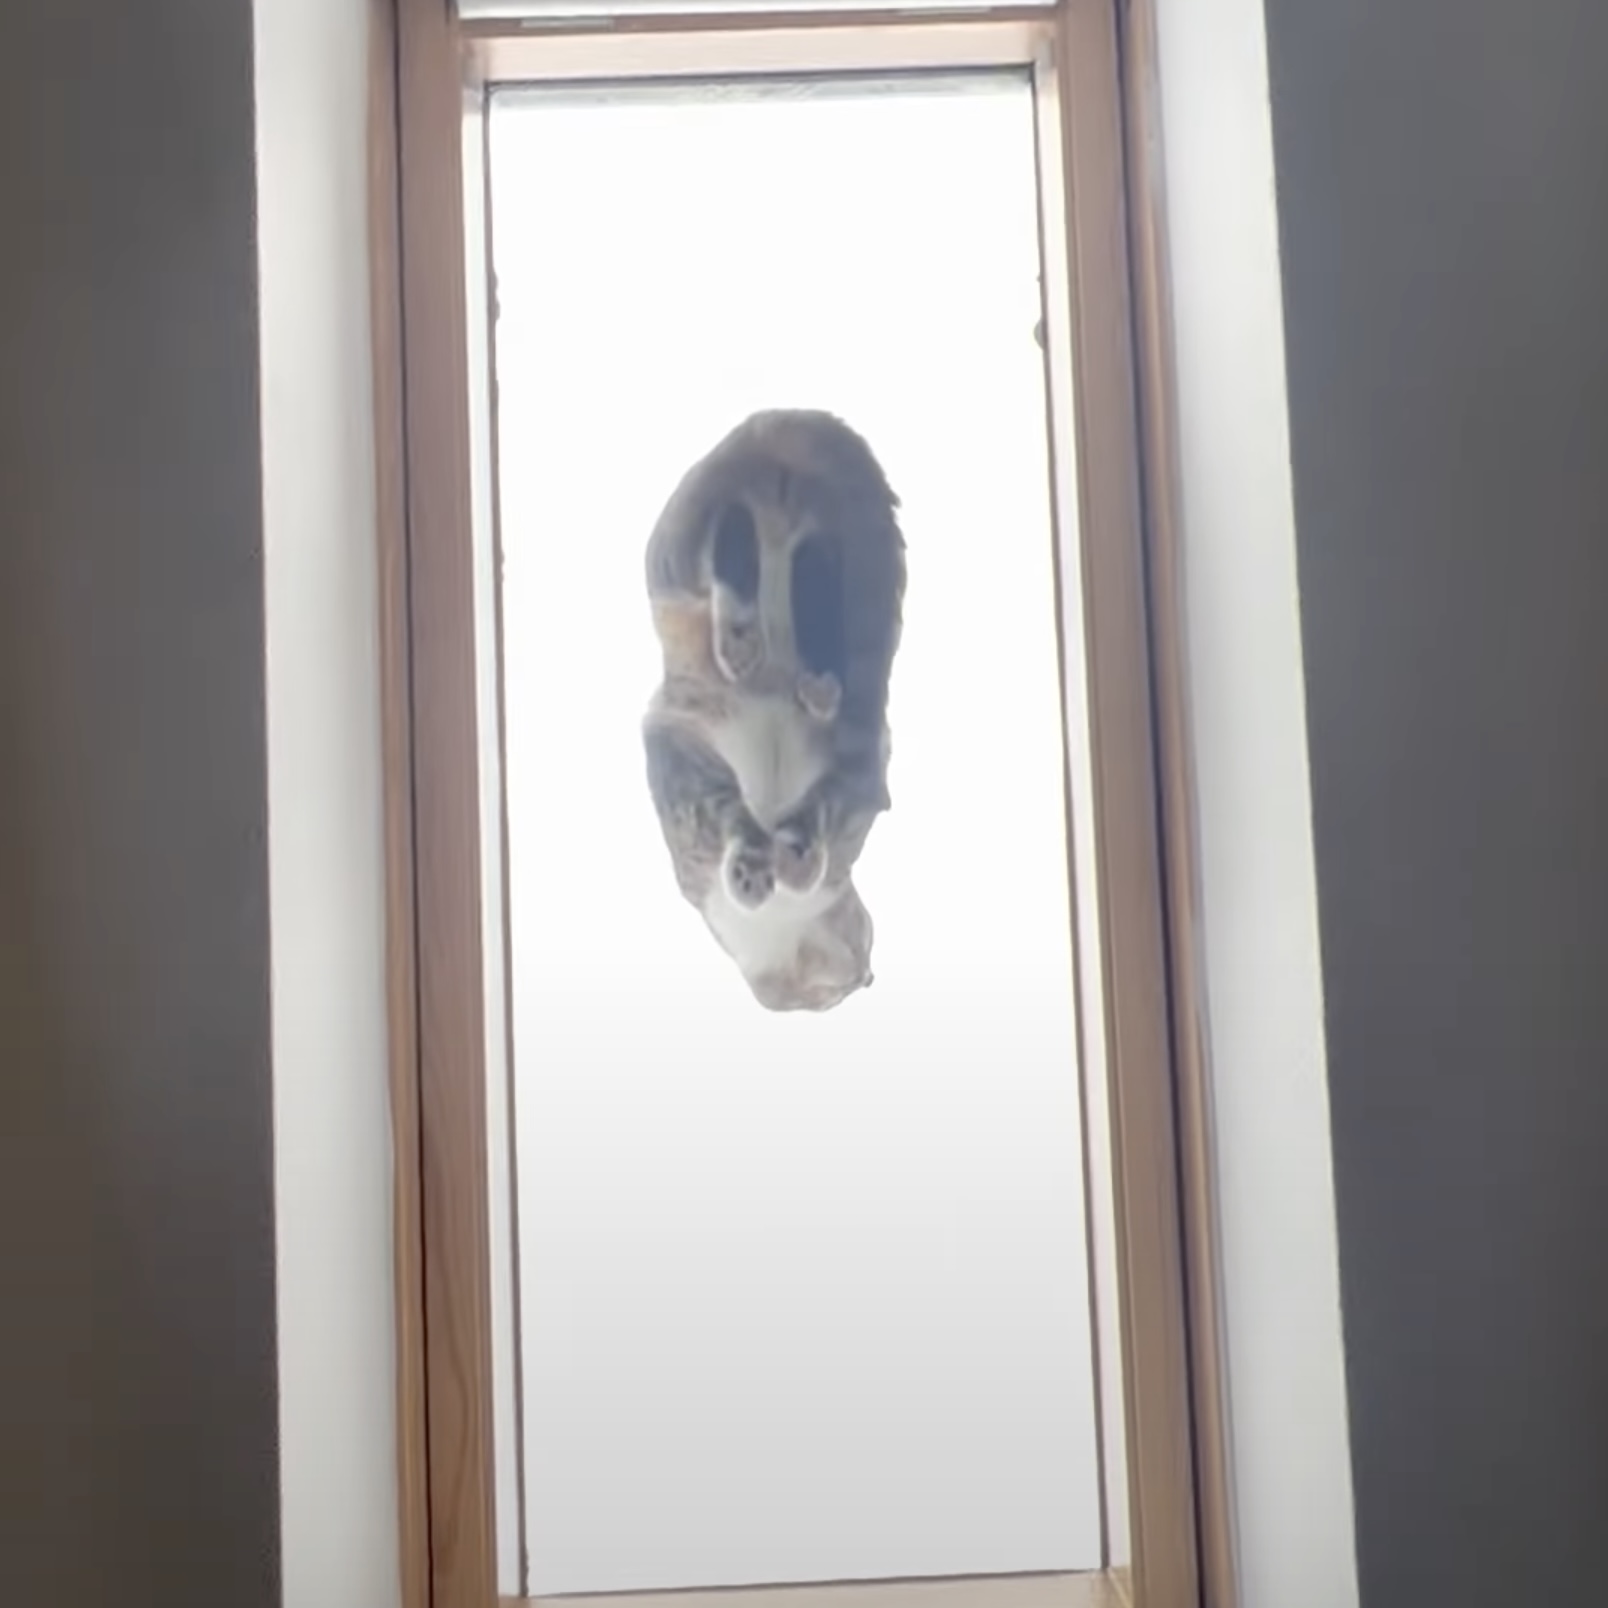 天窓に猫が居るのを見つけてダッシュ、下から覗くと奇跡の光景